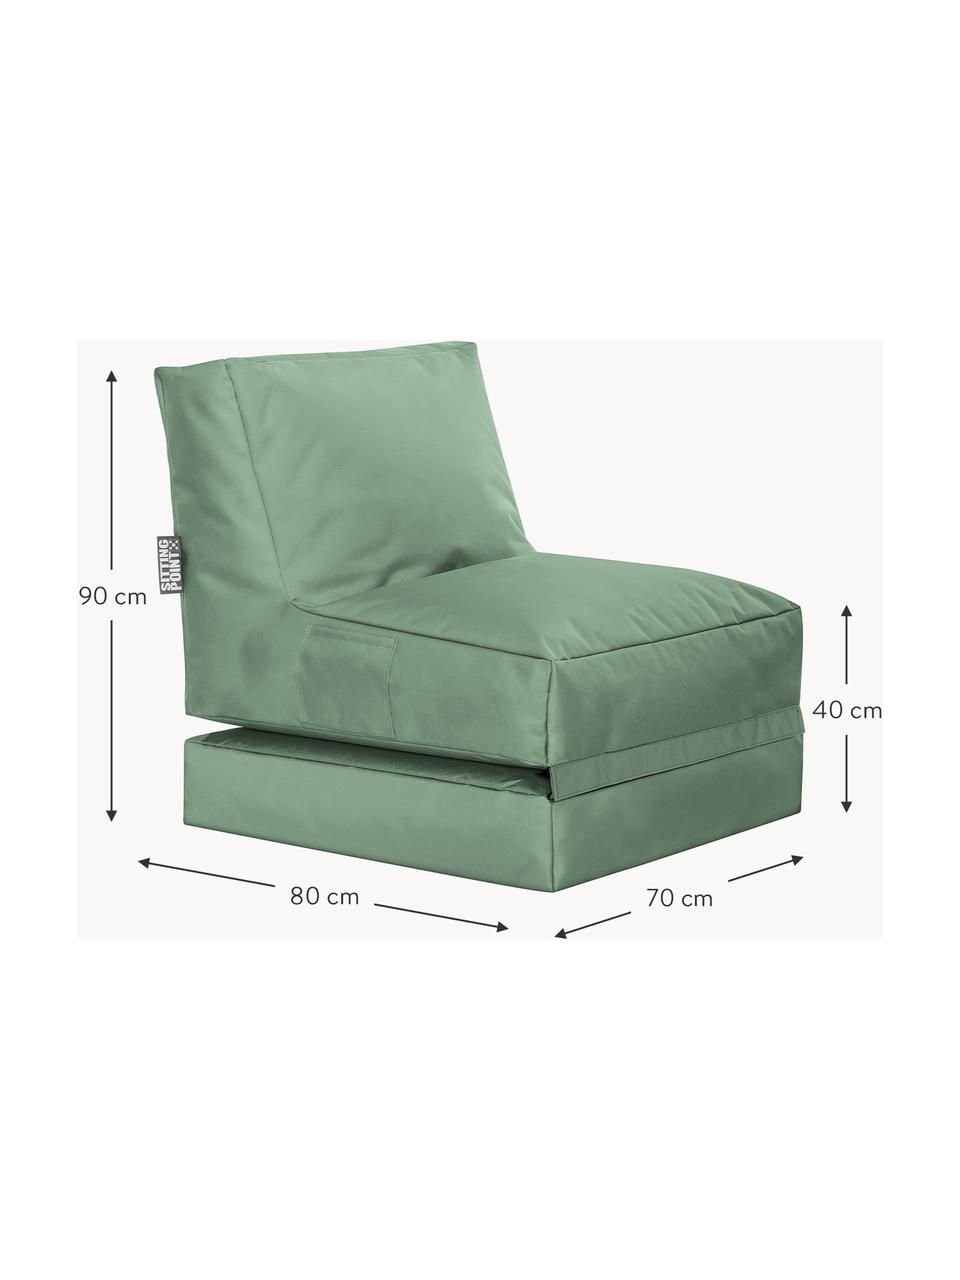 Outdoor loungefauteuil Pop Up met ligfunctie, Bekleding: 100% polyester Binnenzijd, Geweven stof saliegroen, B 70 x H 90 cm